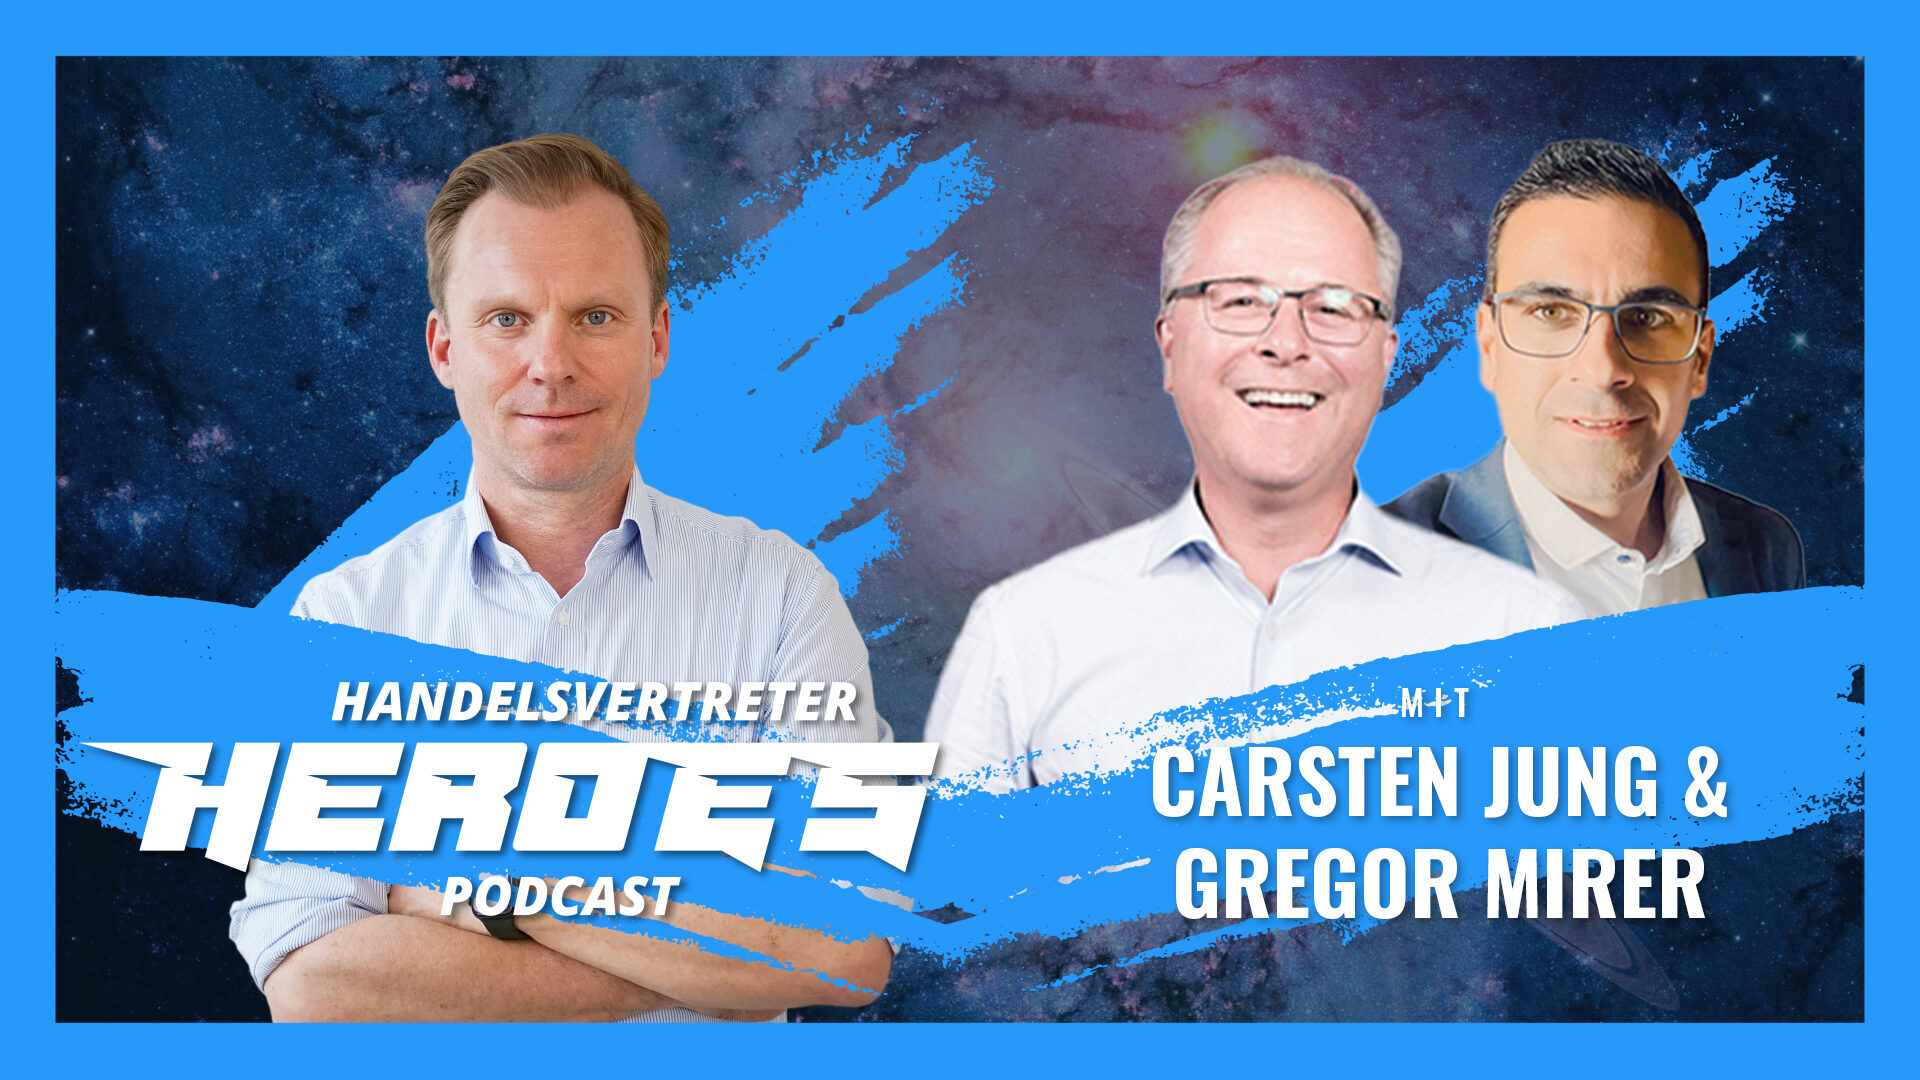 Andre Keeve, Carsten Jung & Gregor Mirer